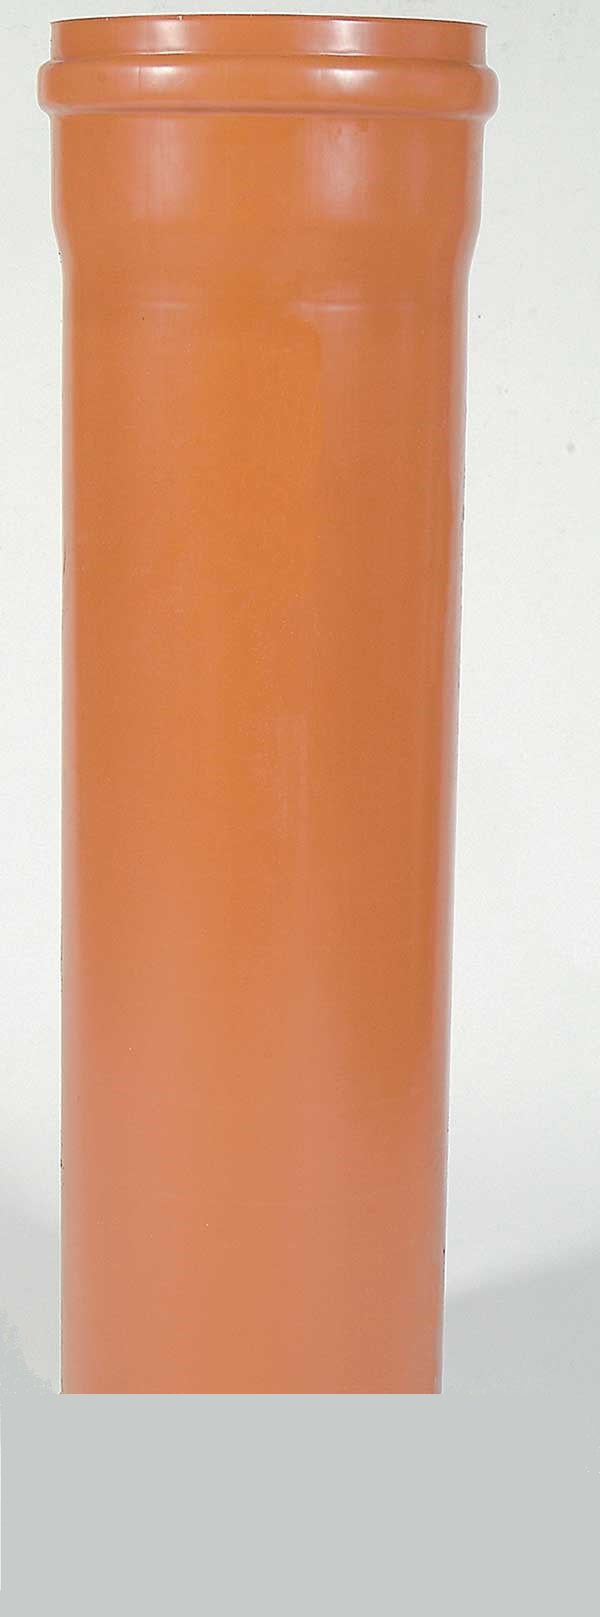 Schachtrohr PVC, Länge 1000 mm, D 300 mm